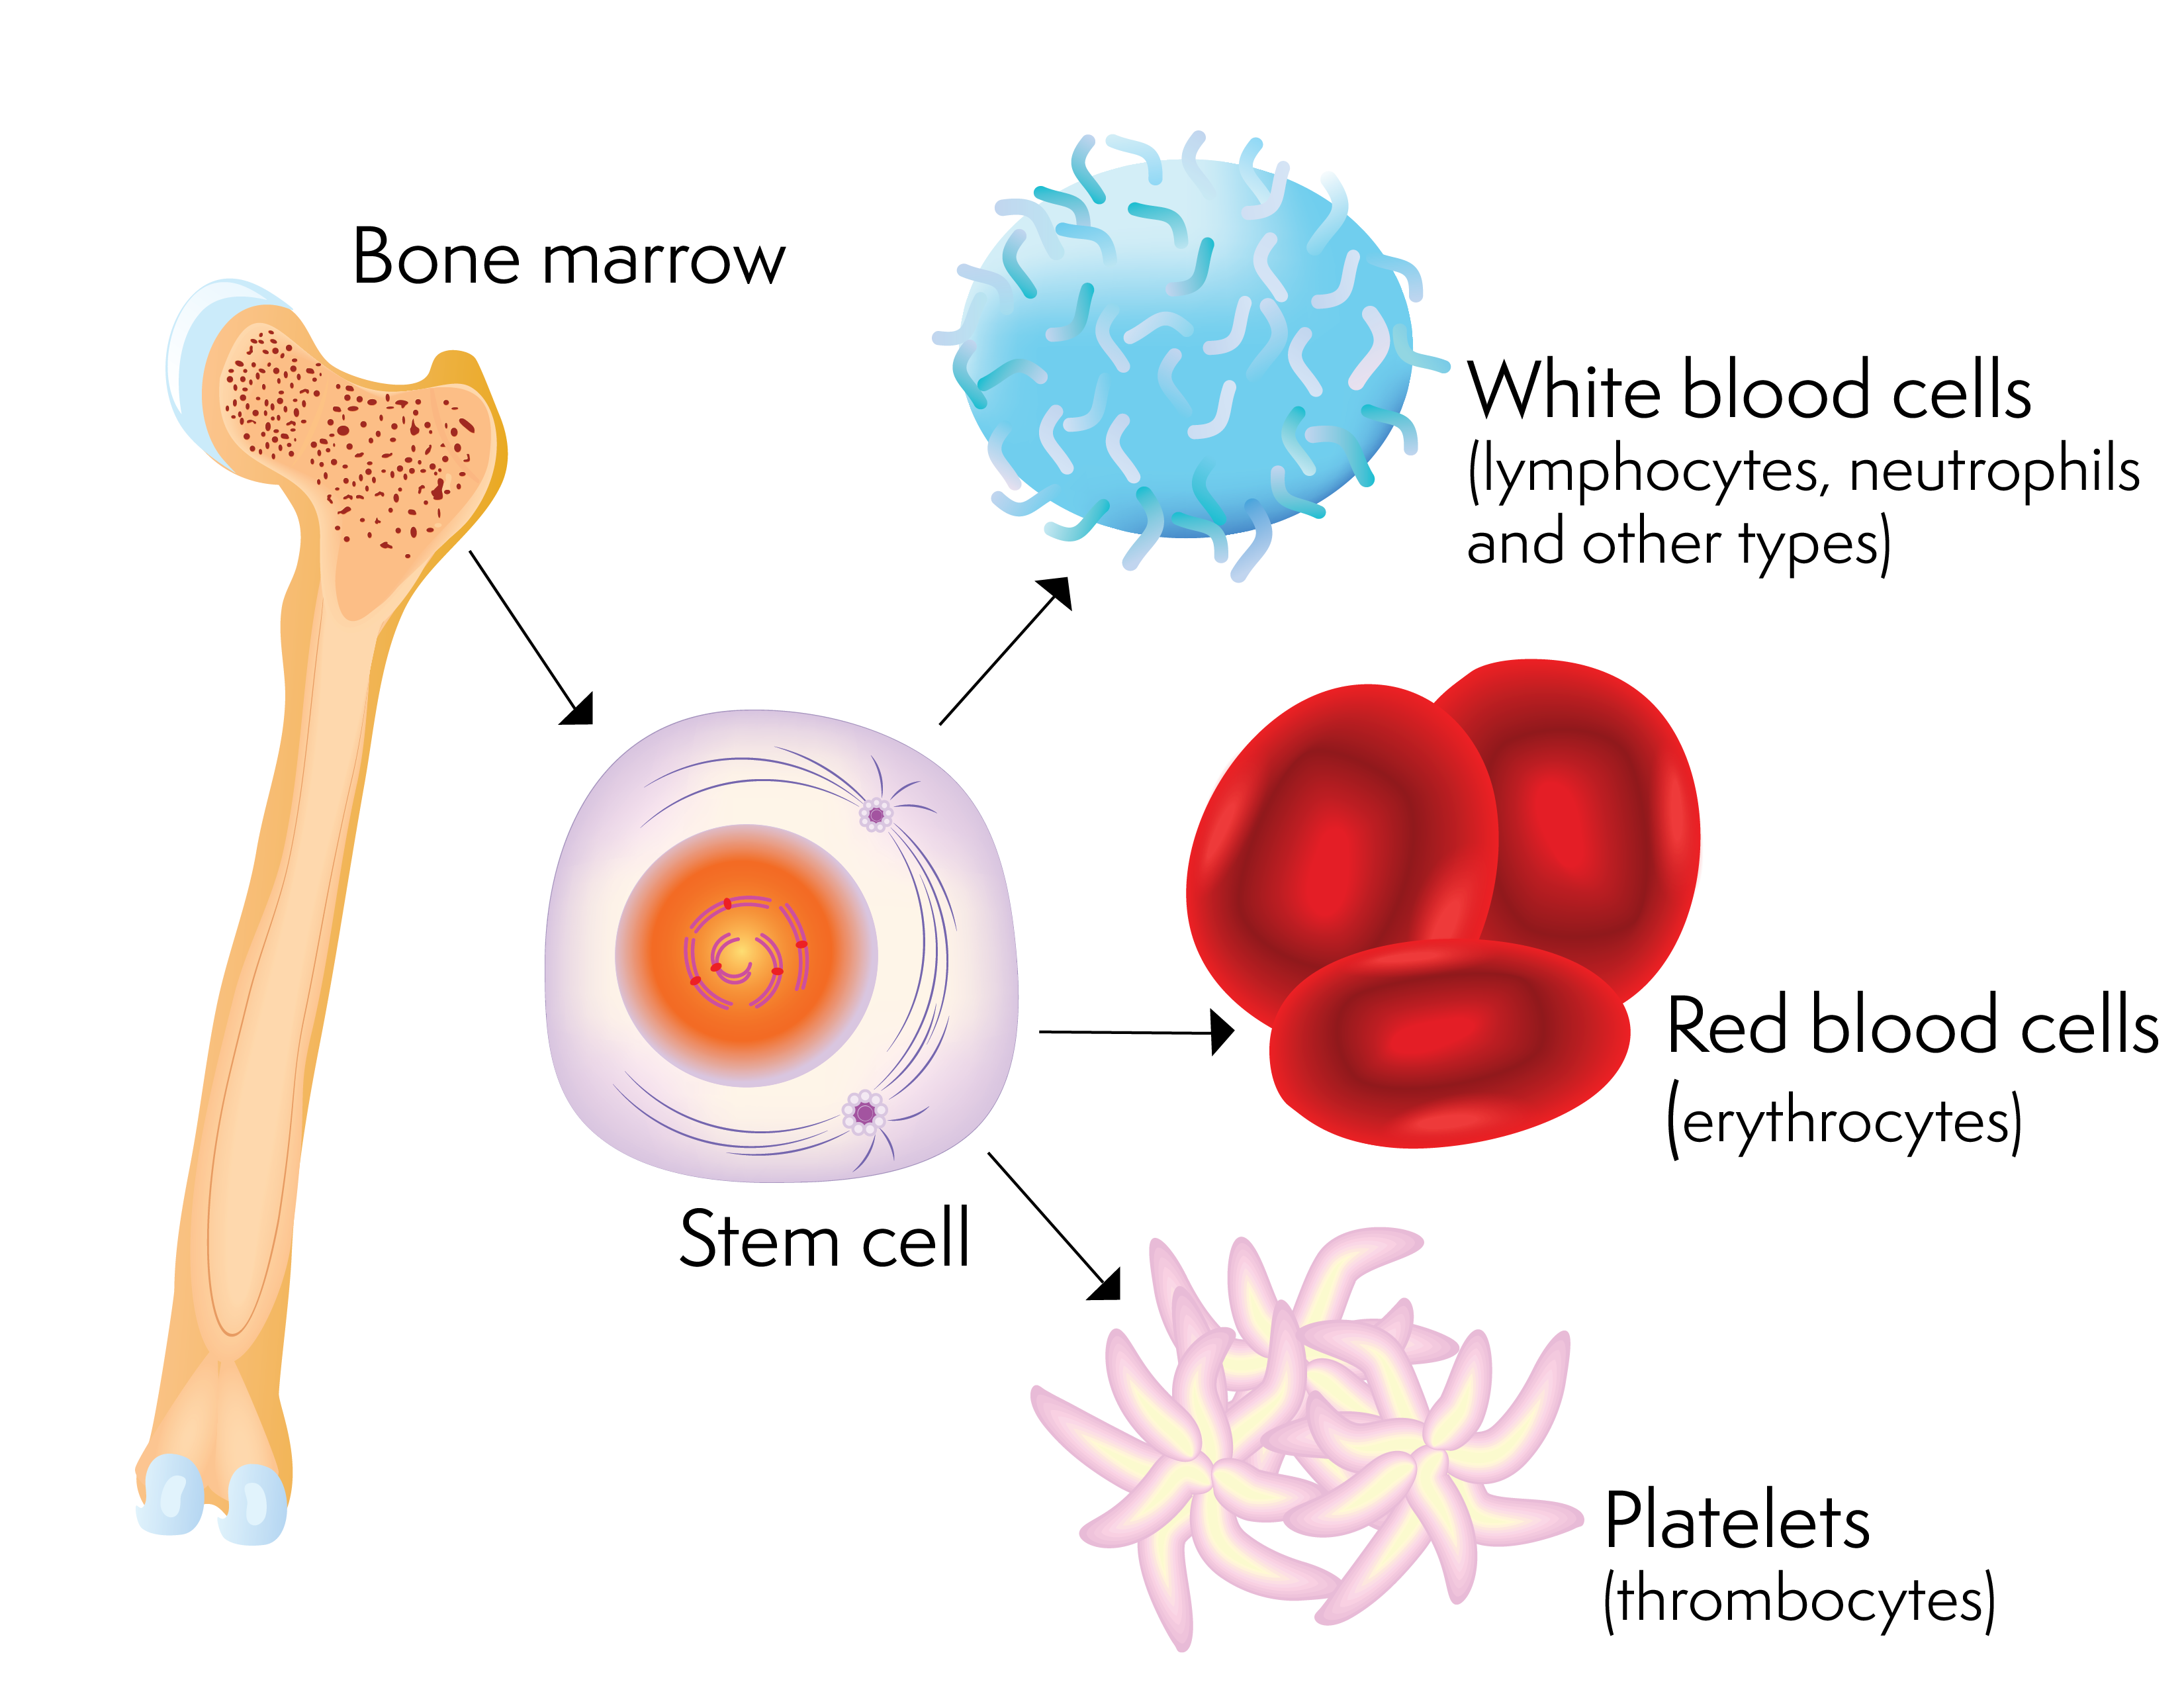 Uma célula-tronco e as células do sangue pode produzir